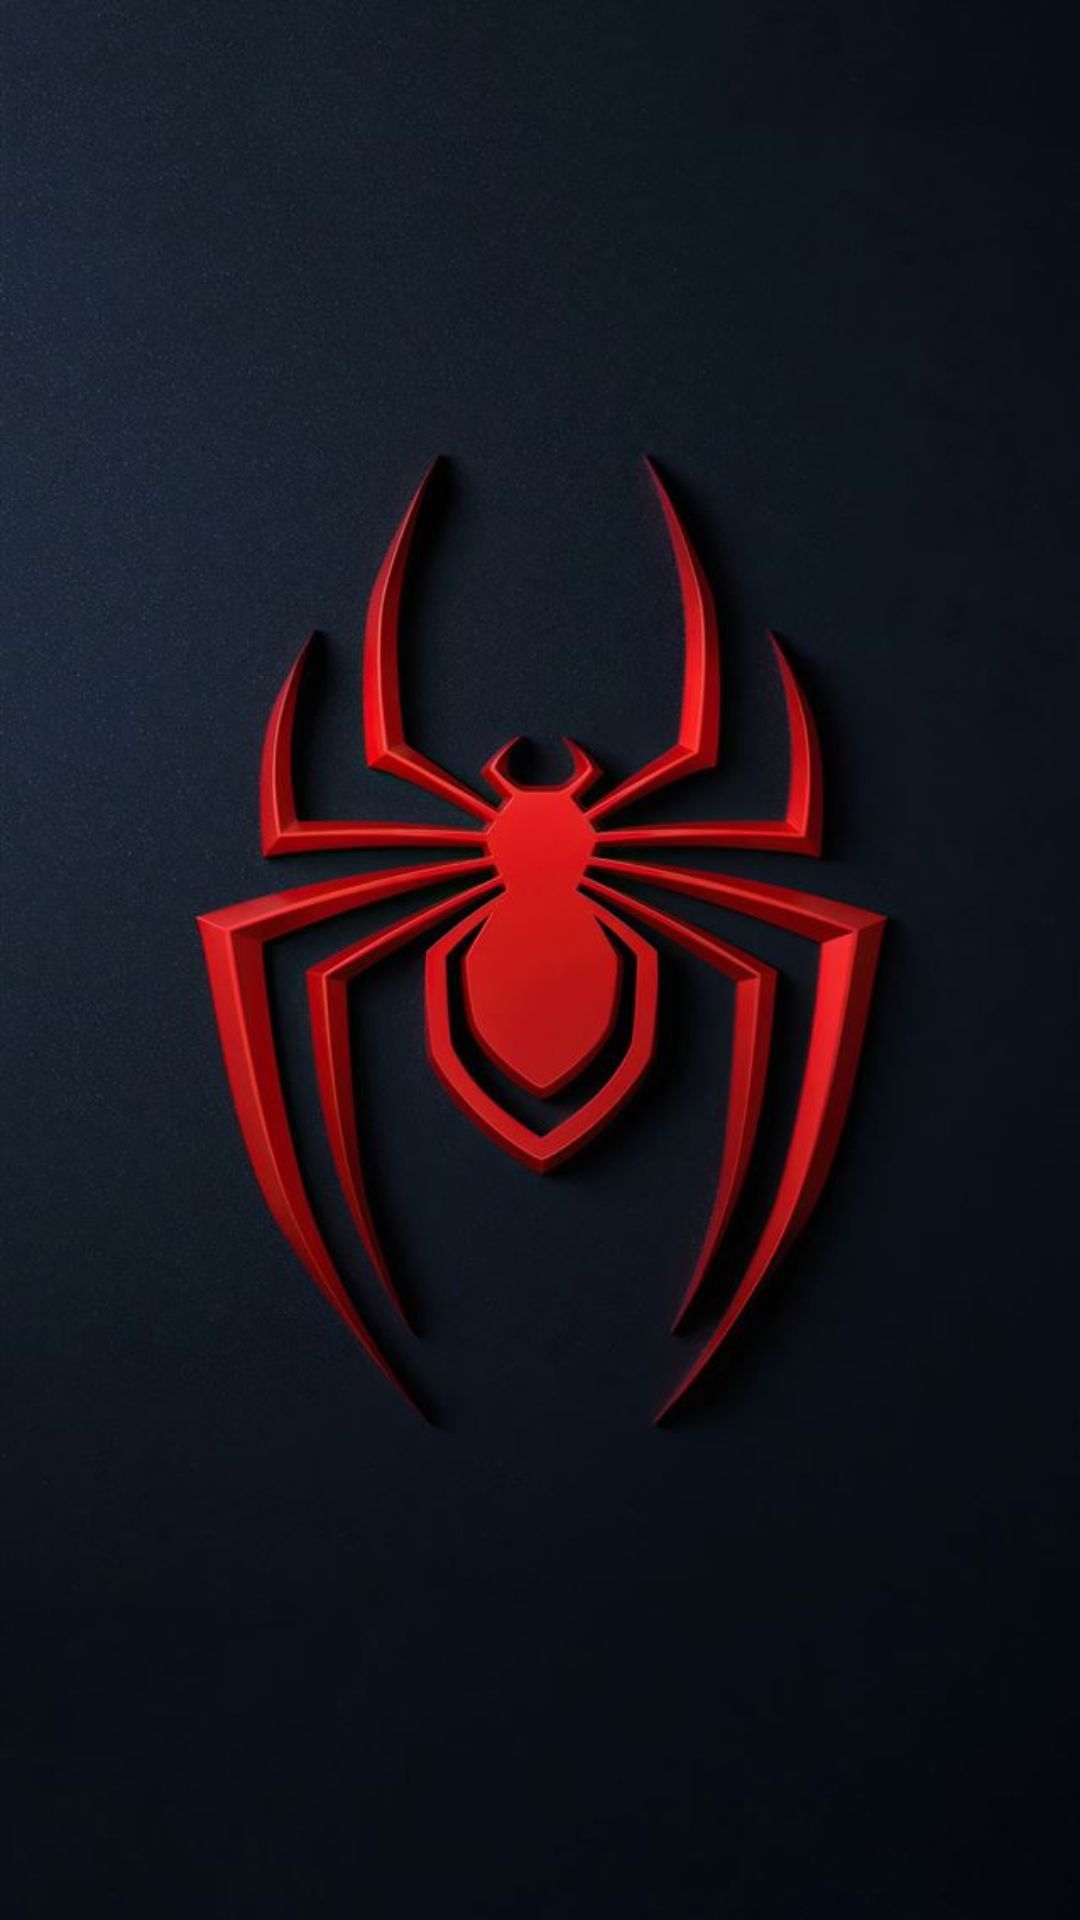 The spider logo on a dark background - 